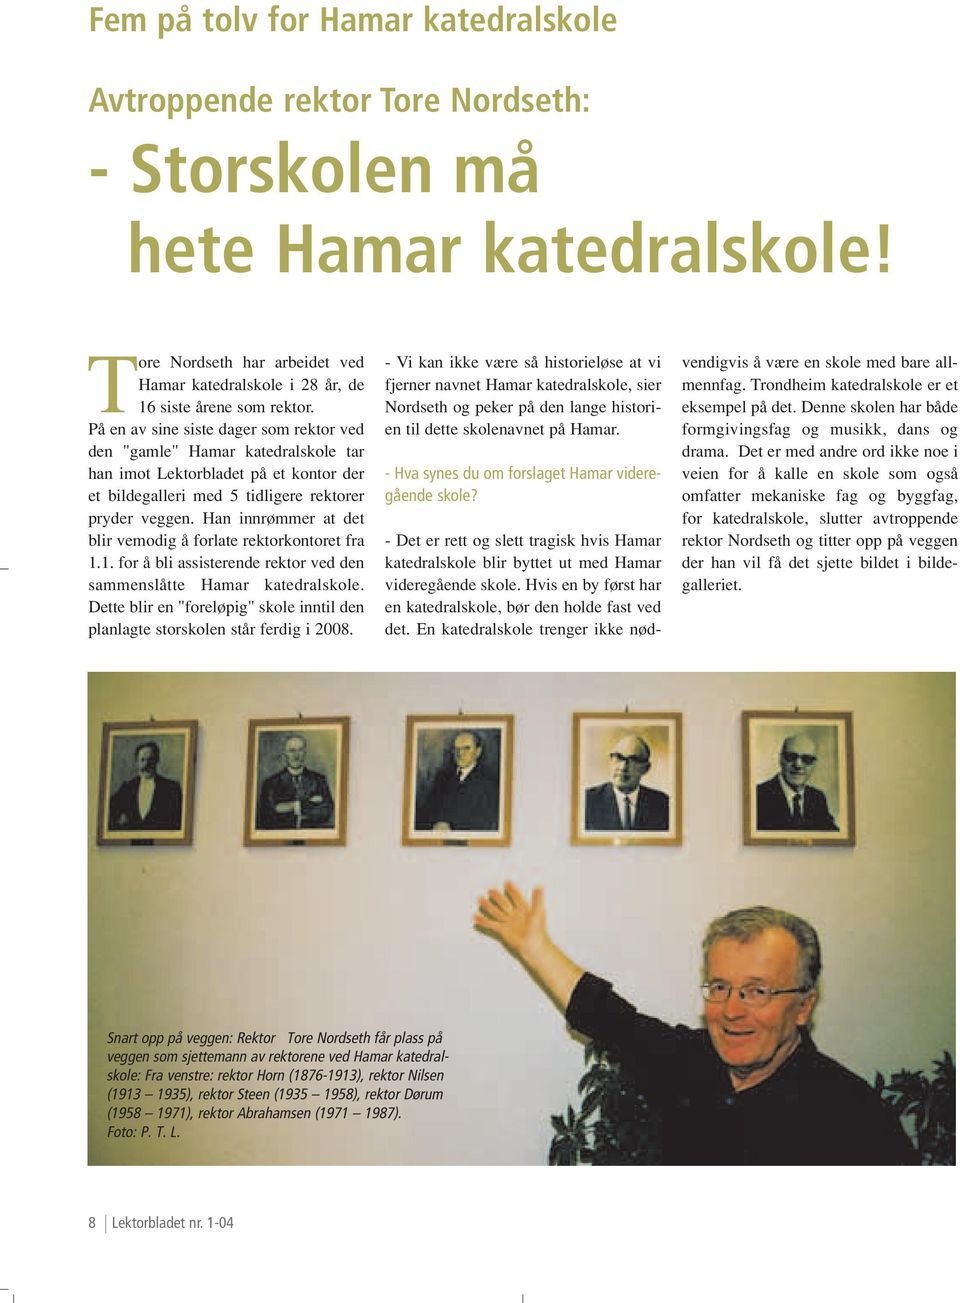 På en av sine siste dager som rektor ved den "gamle" Hamar katedralskole tar han imot Lektorbladet på et kontor der et bildegalleri med 5 tidligere rektorer pryder veggen.